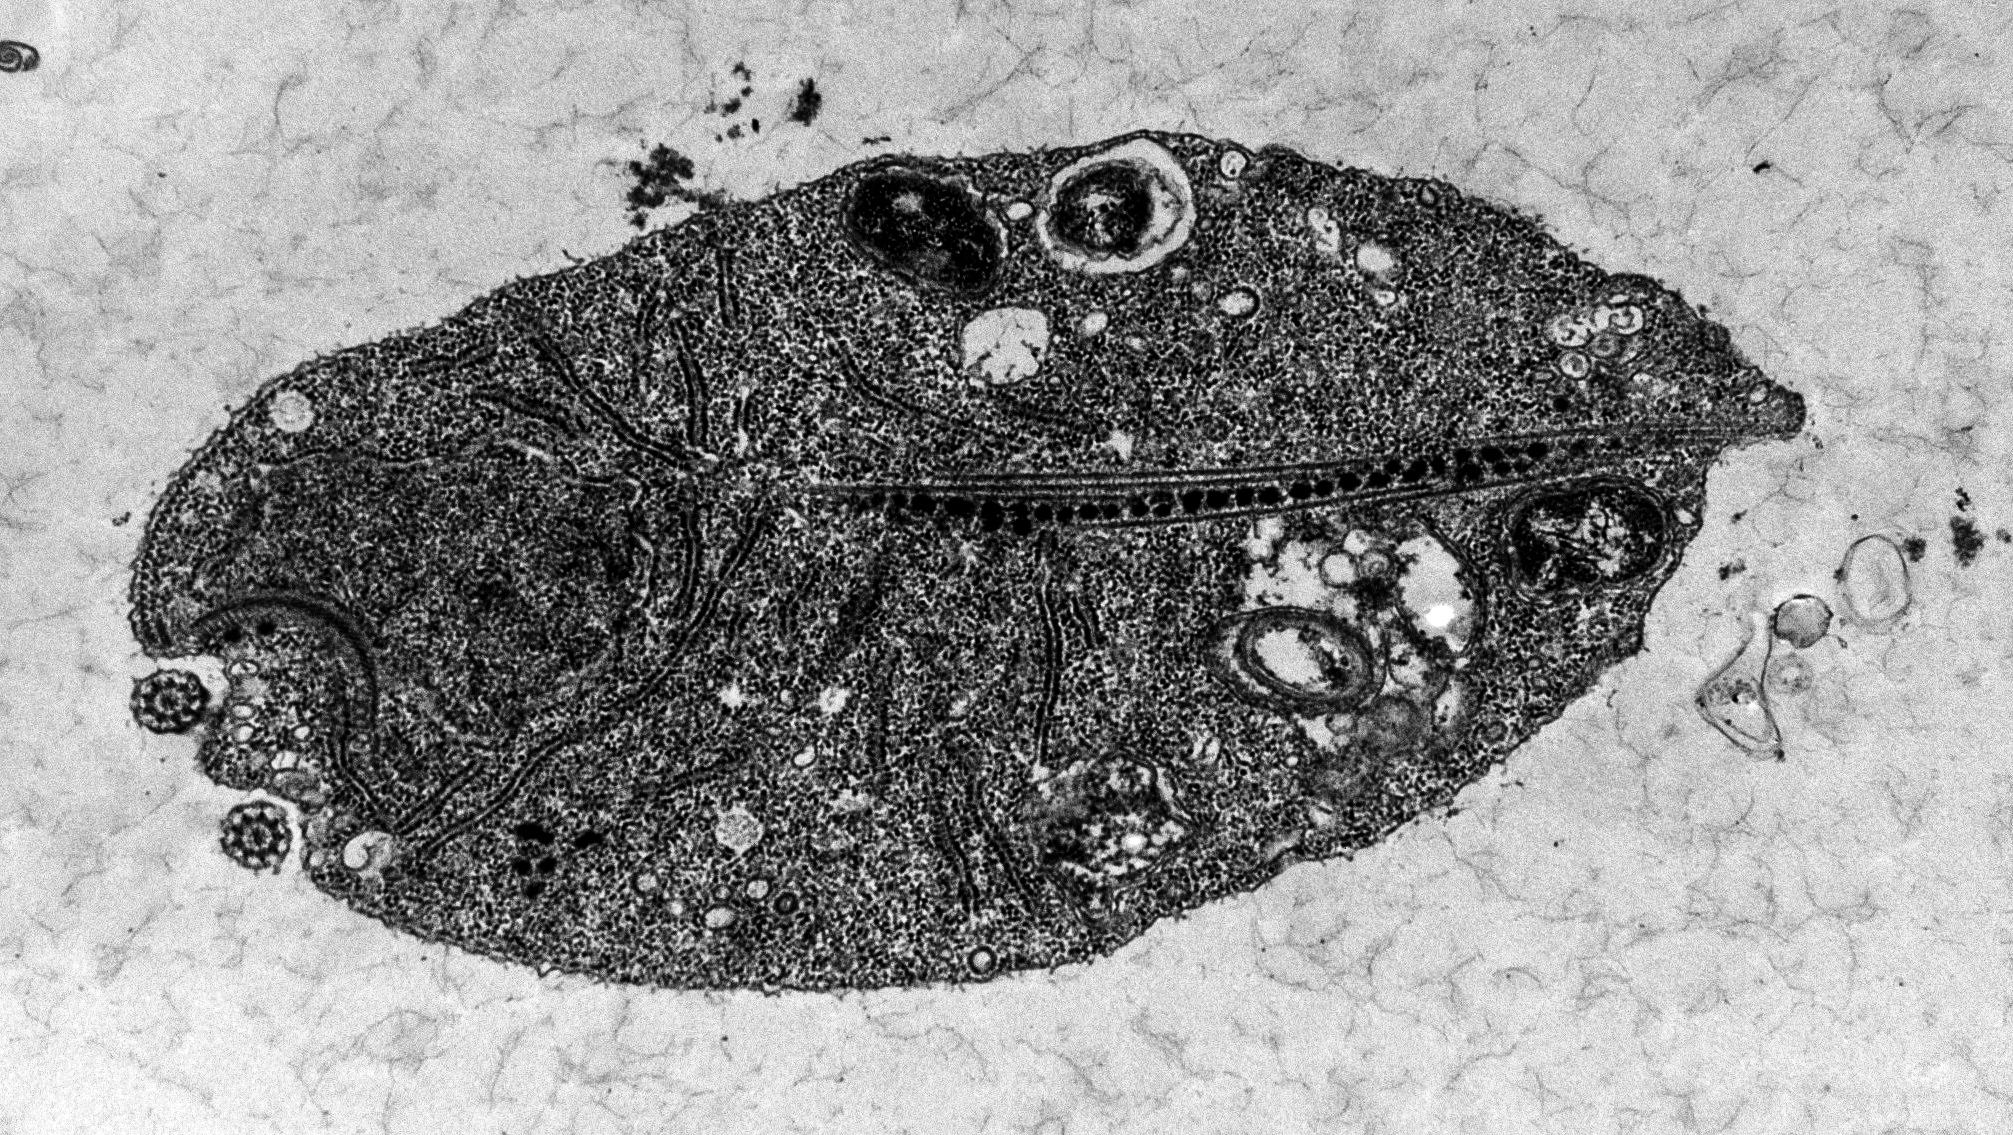 Přelomový objev českých vědců: První prvok bez mitochondrií